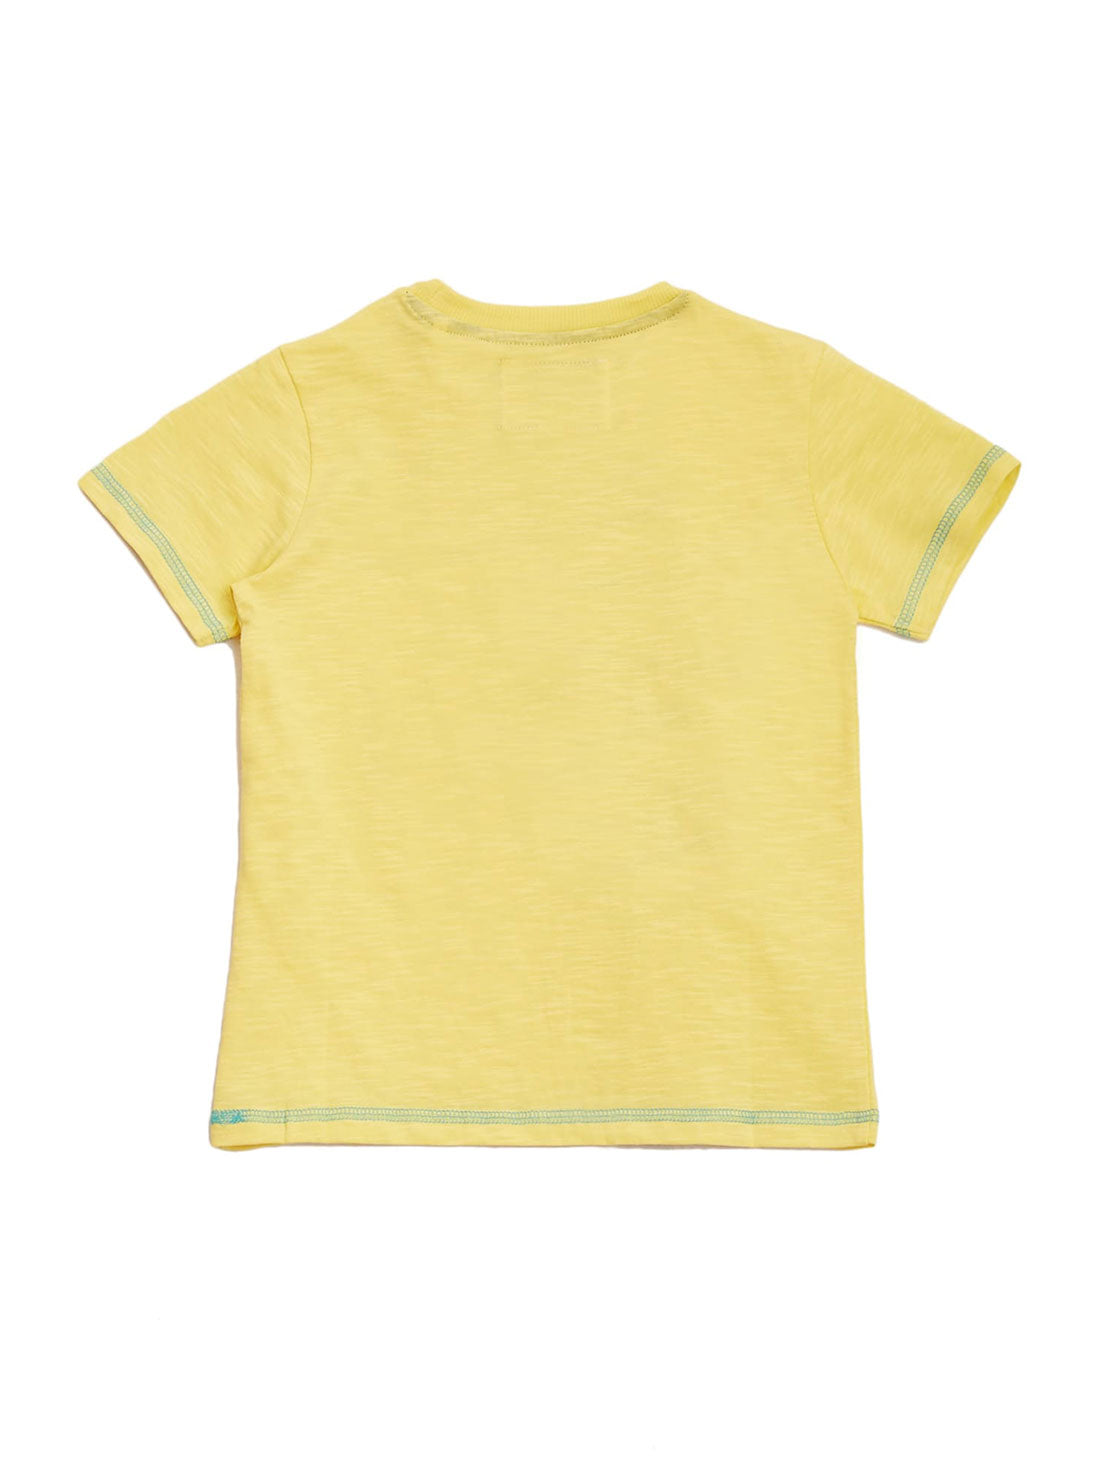 Yellow City T-Shirt (2-7)